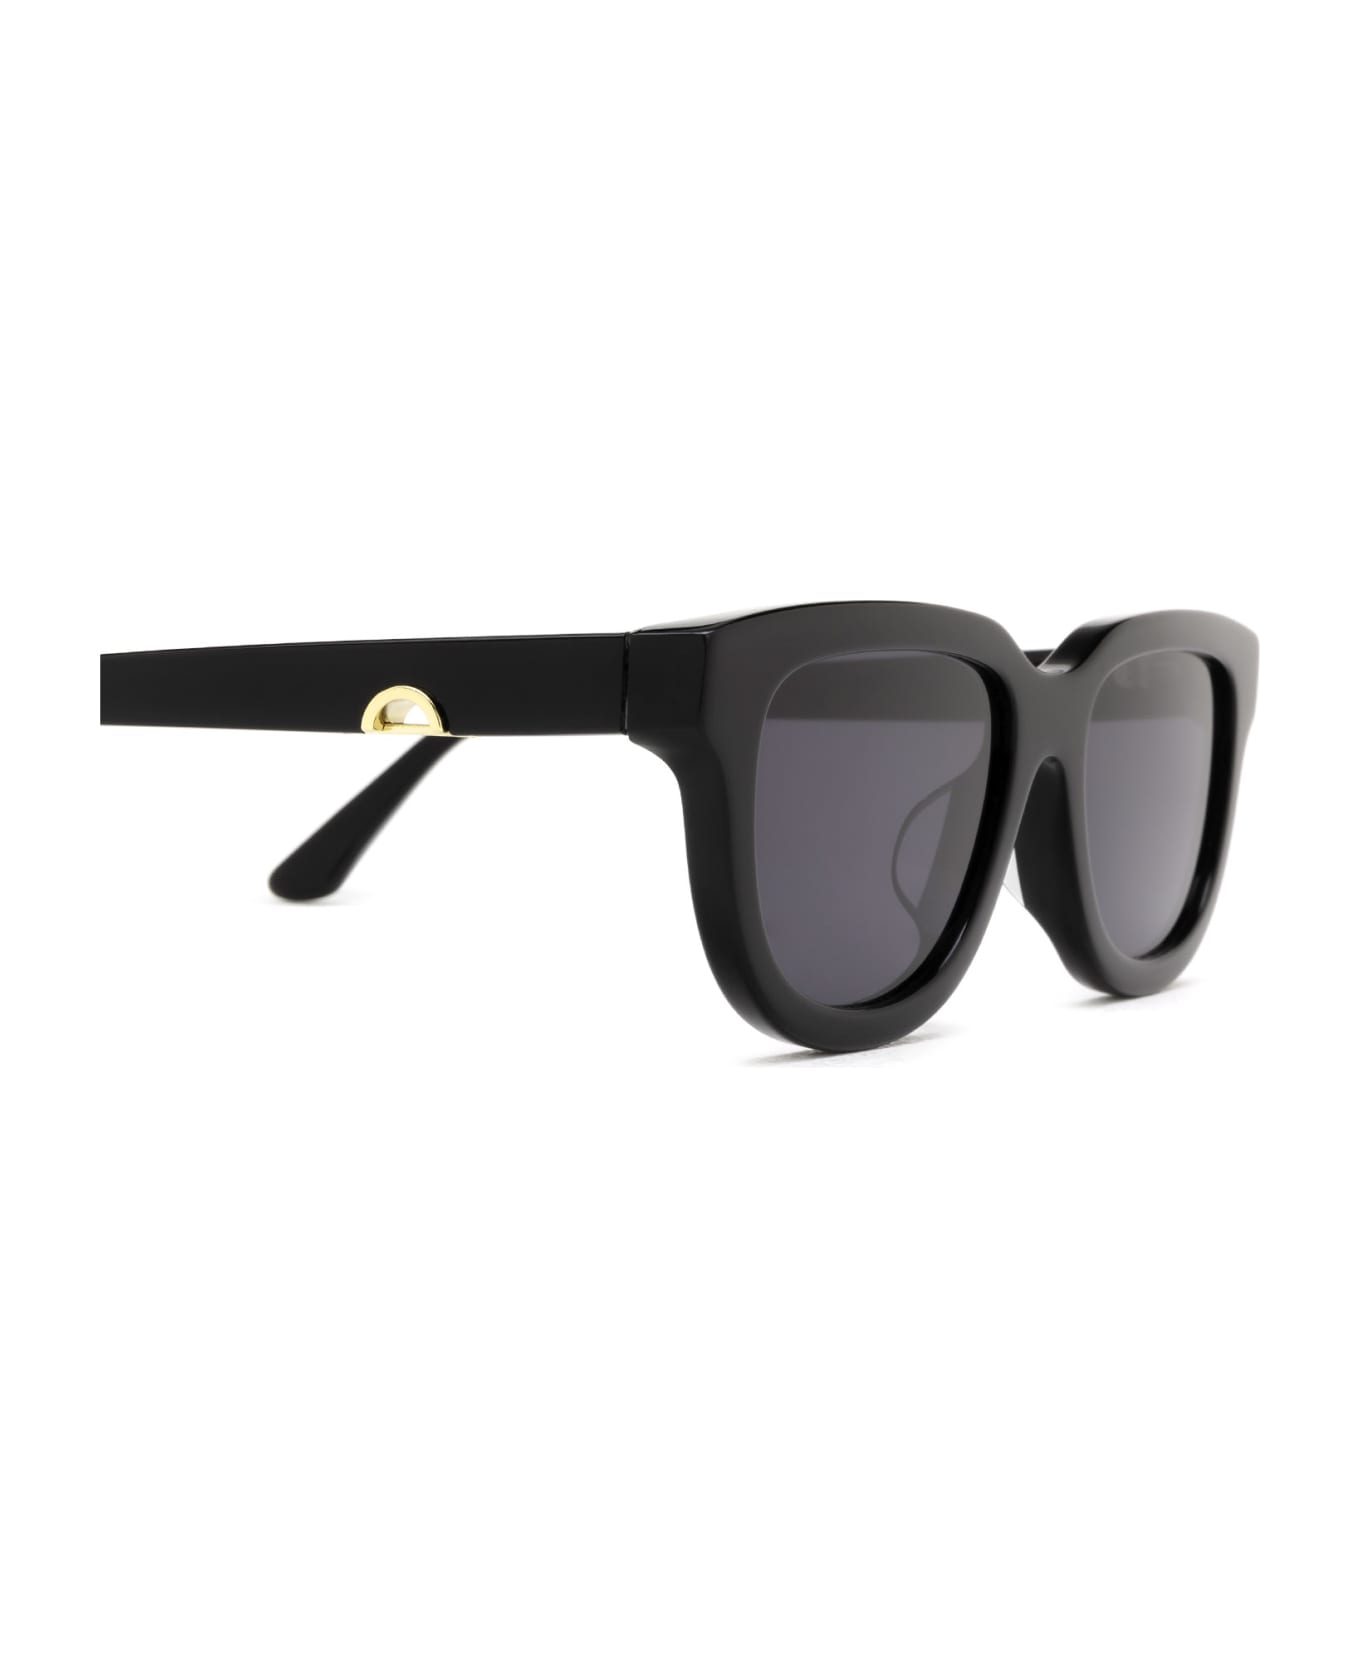 Huma Lion Black Sunglasses - Black サングラス